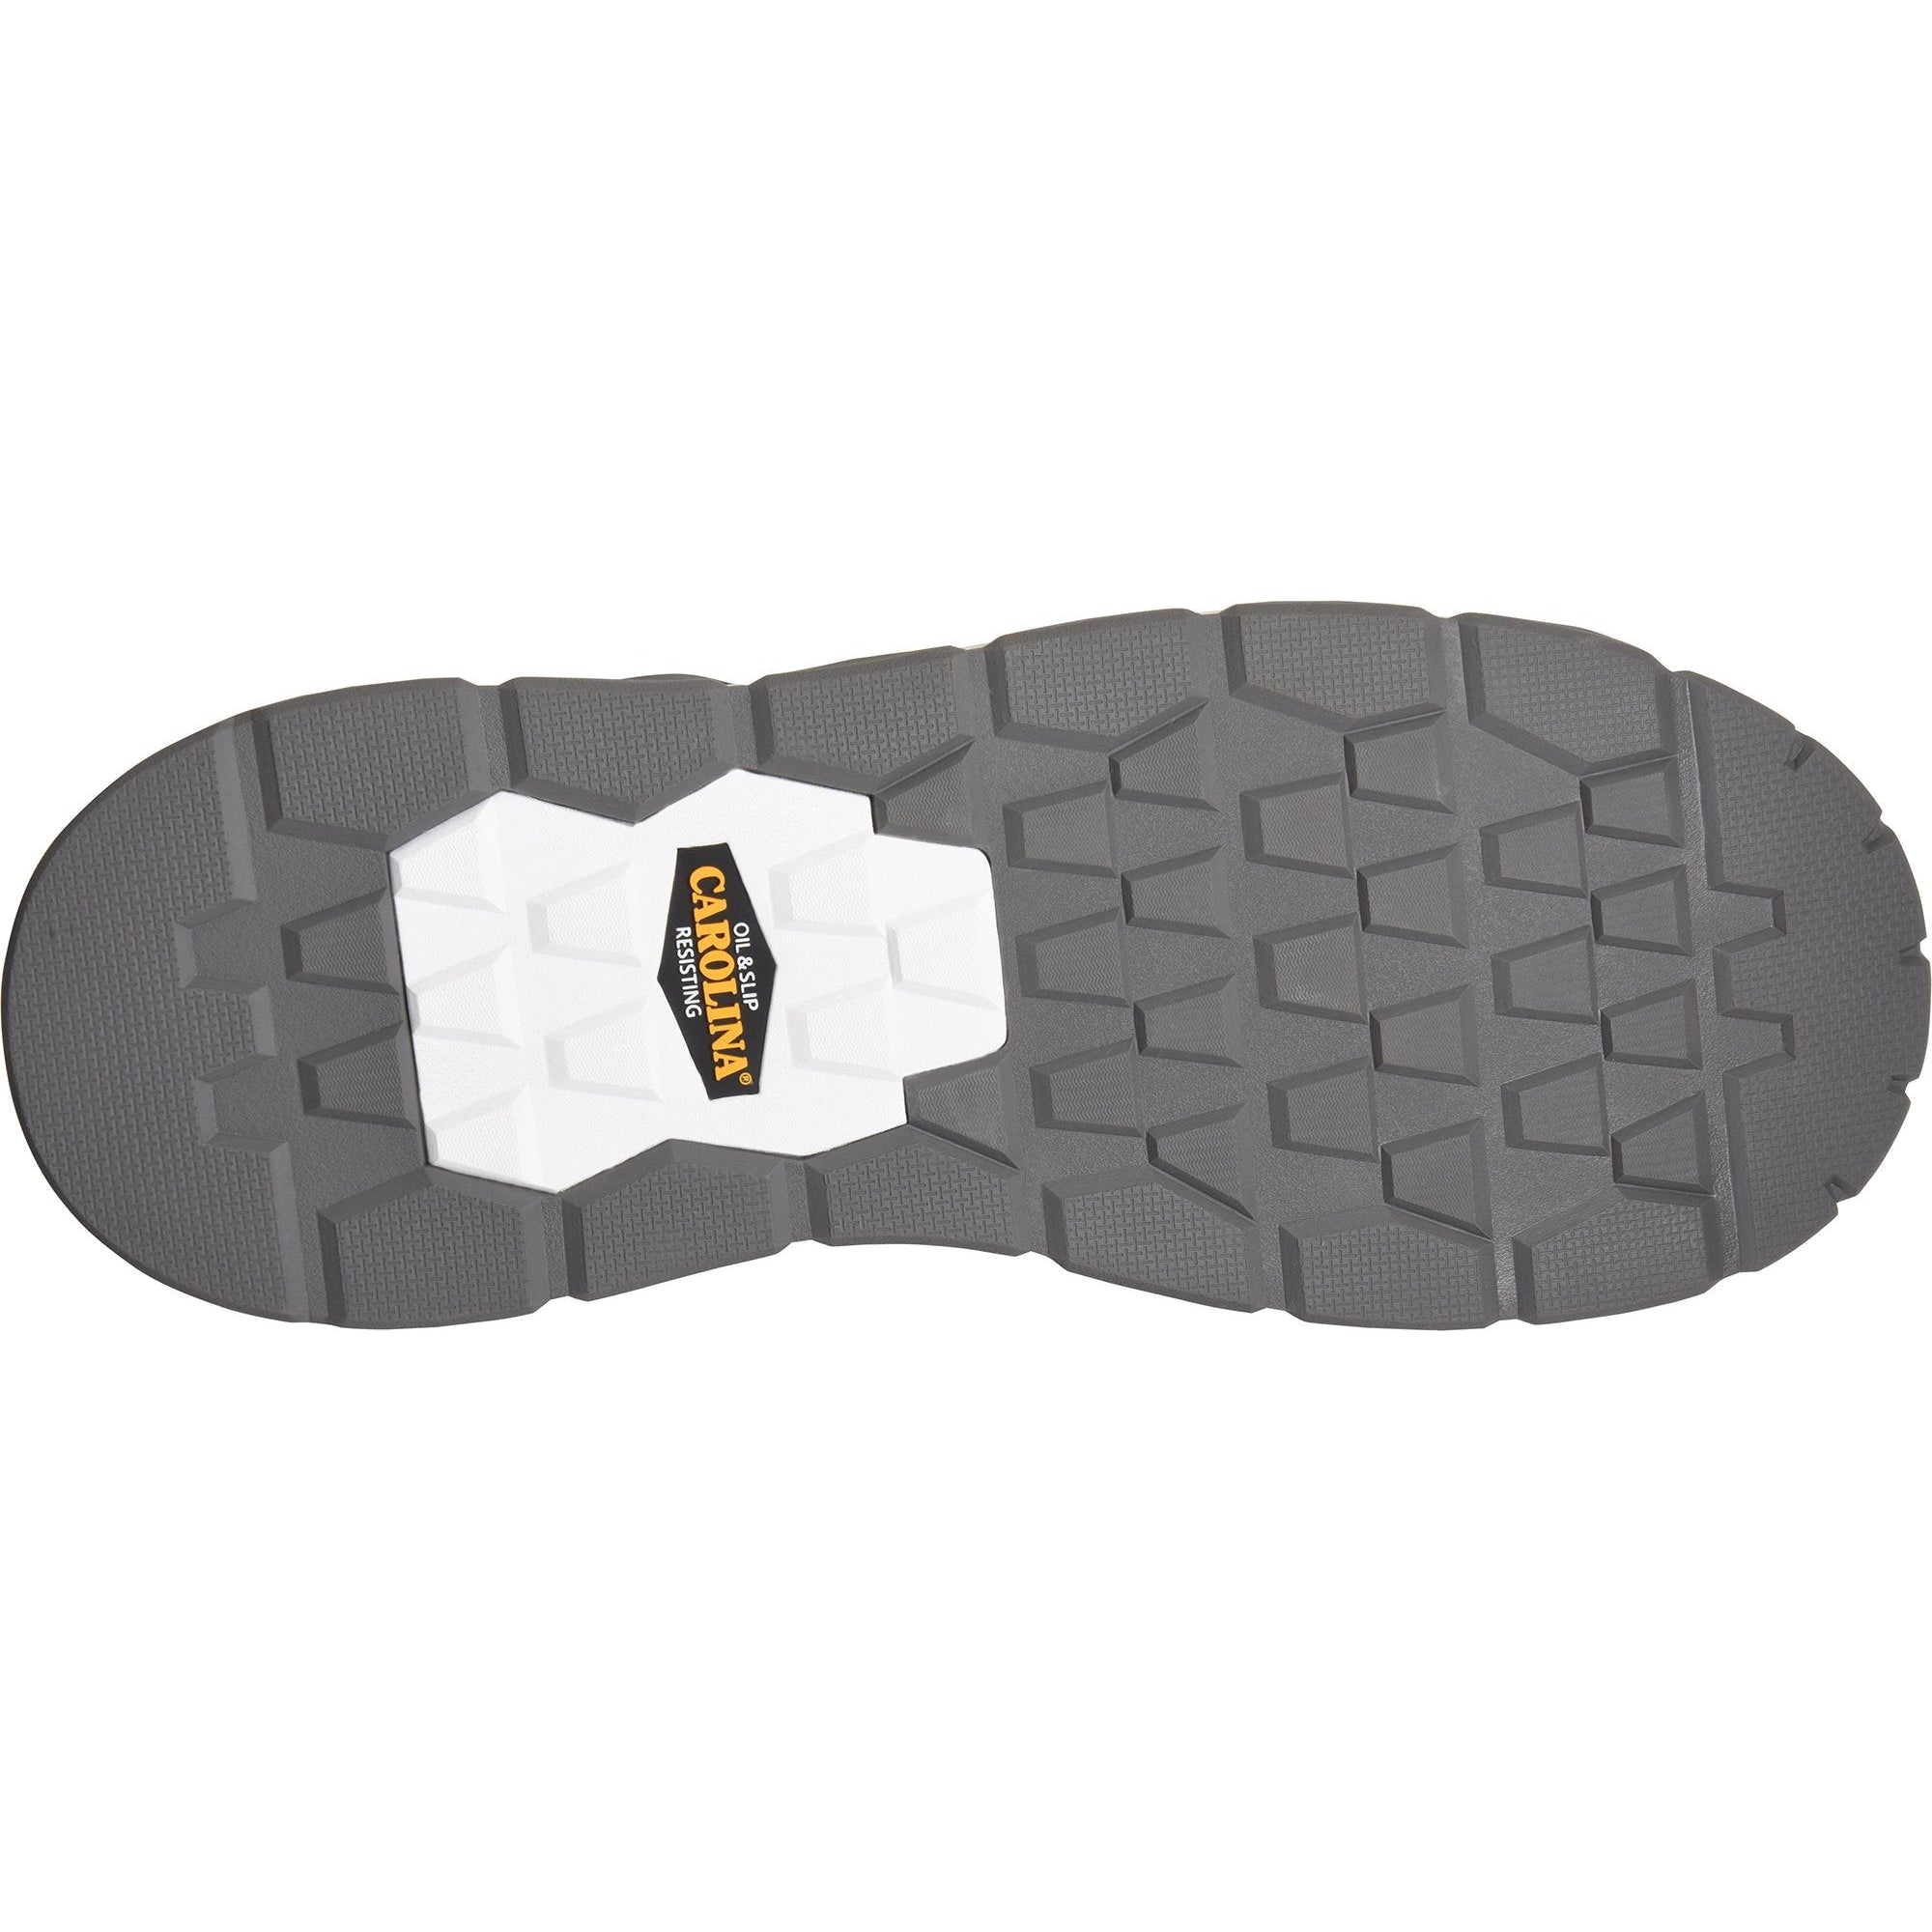 Carolina Men's Handler 5" Composite Toe Wedge Work Boot -Brown- CA7835  - Overlook Boots